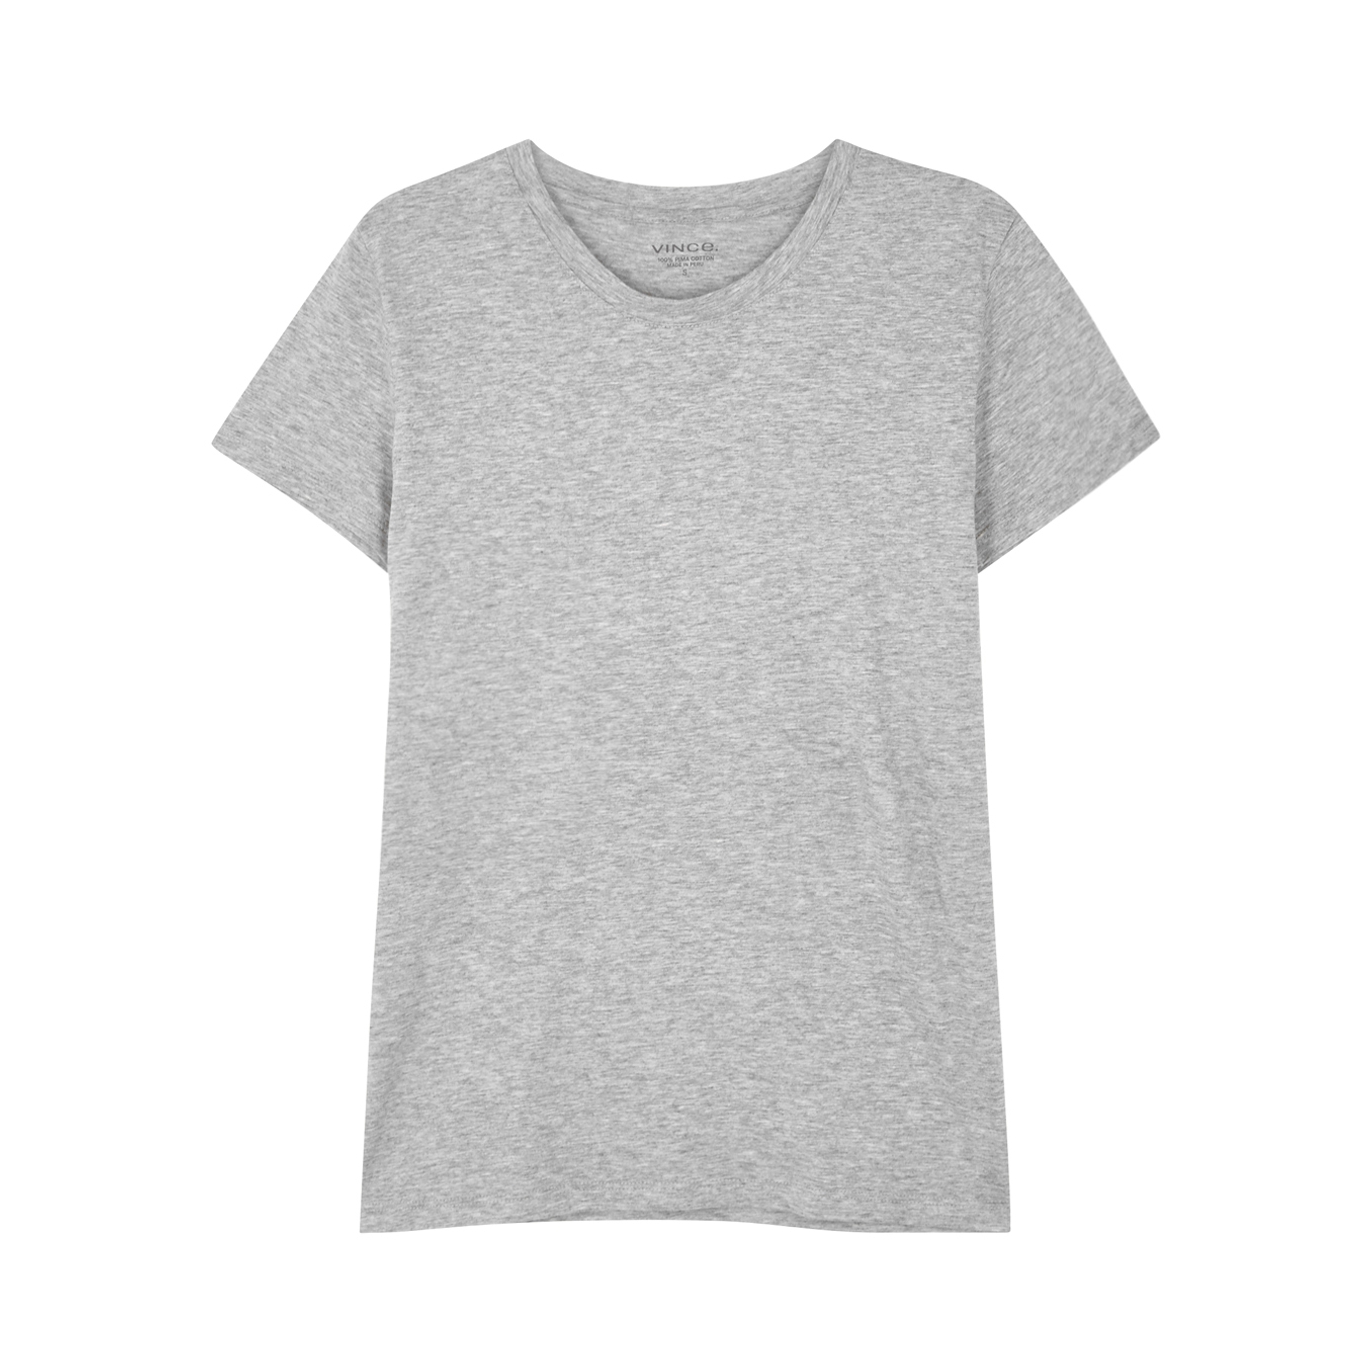 Vince Essential Grey Pima Cotton T-shirt - M